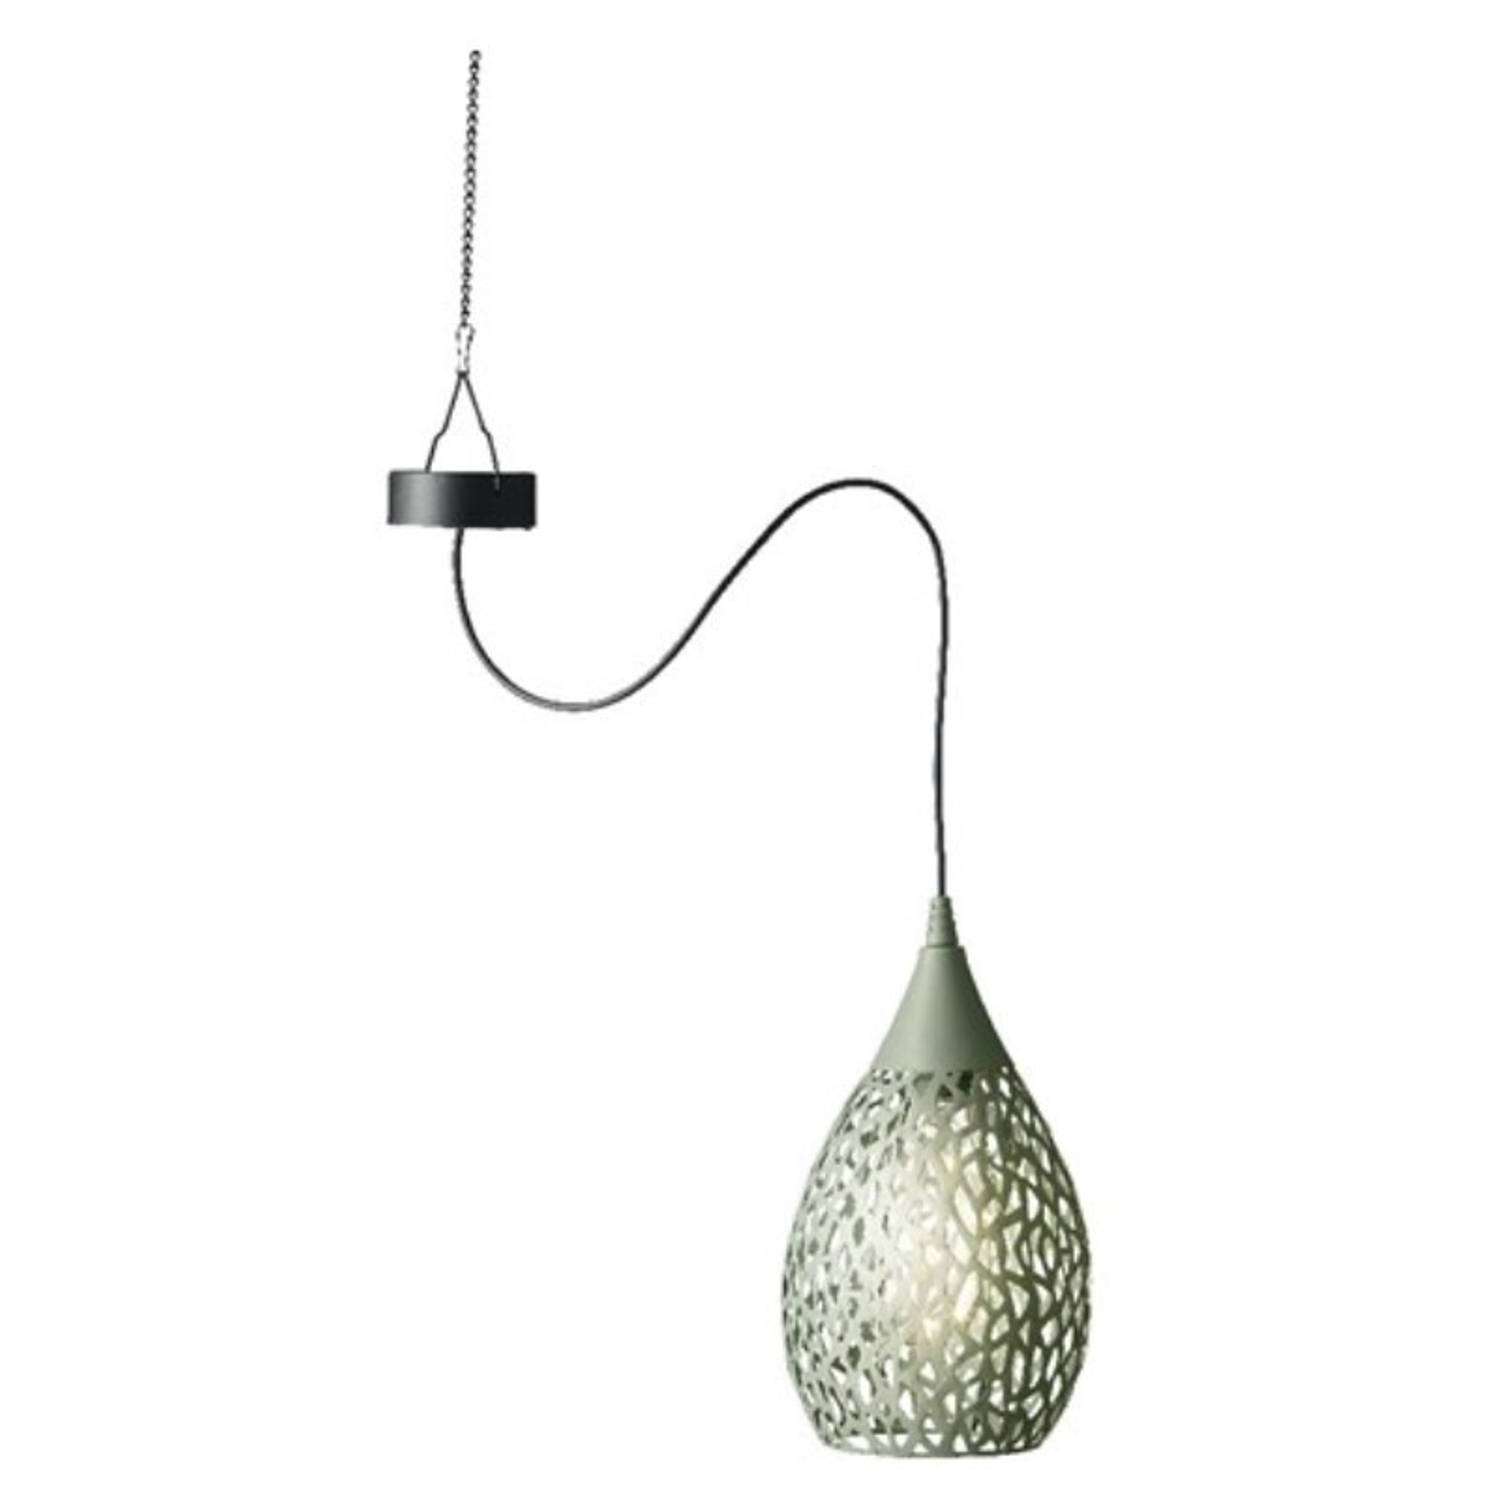 Hanglamp solar - groen - ijzer - 21 cm - tuinverlichting - Buitenverlichting